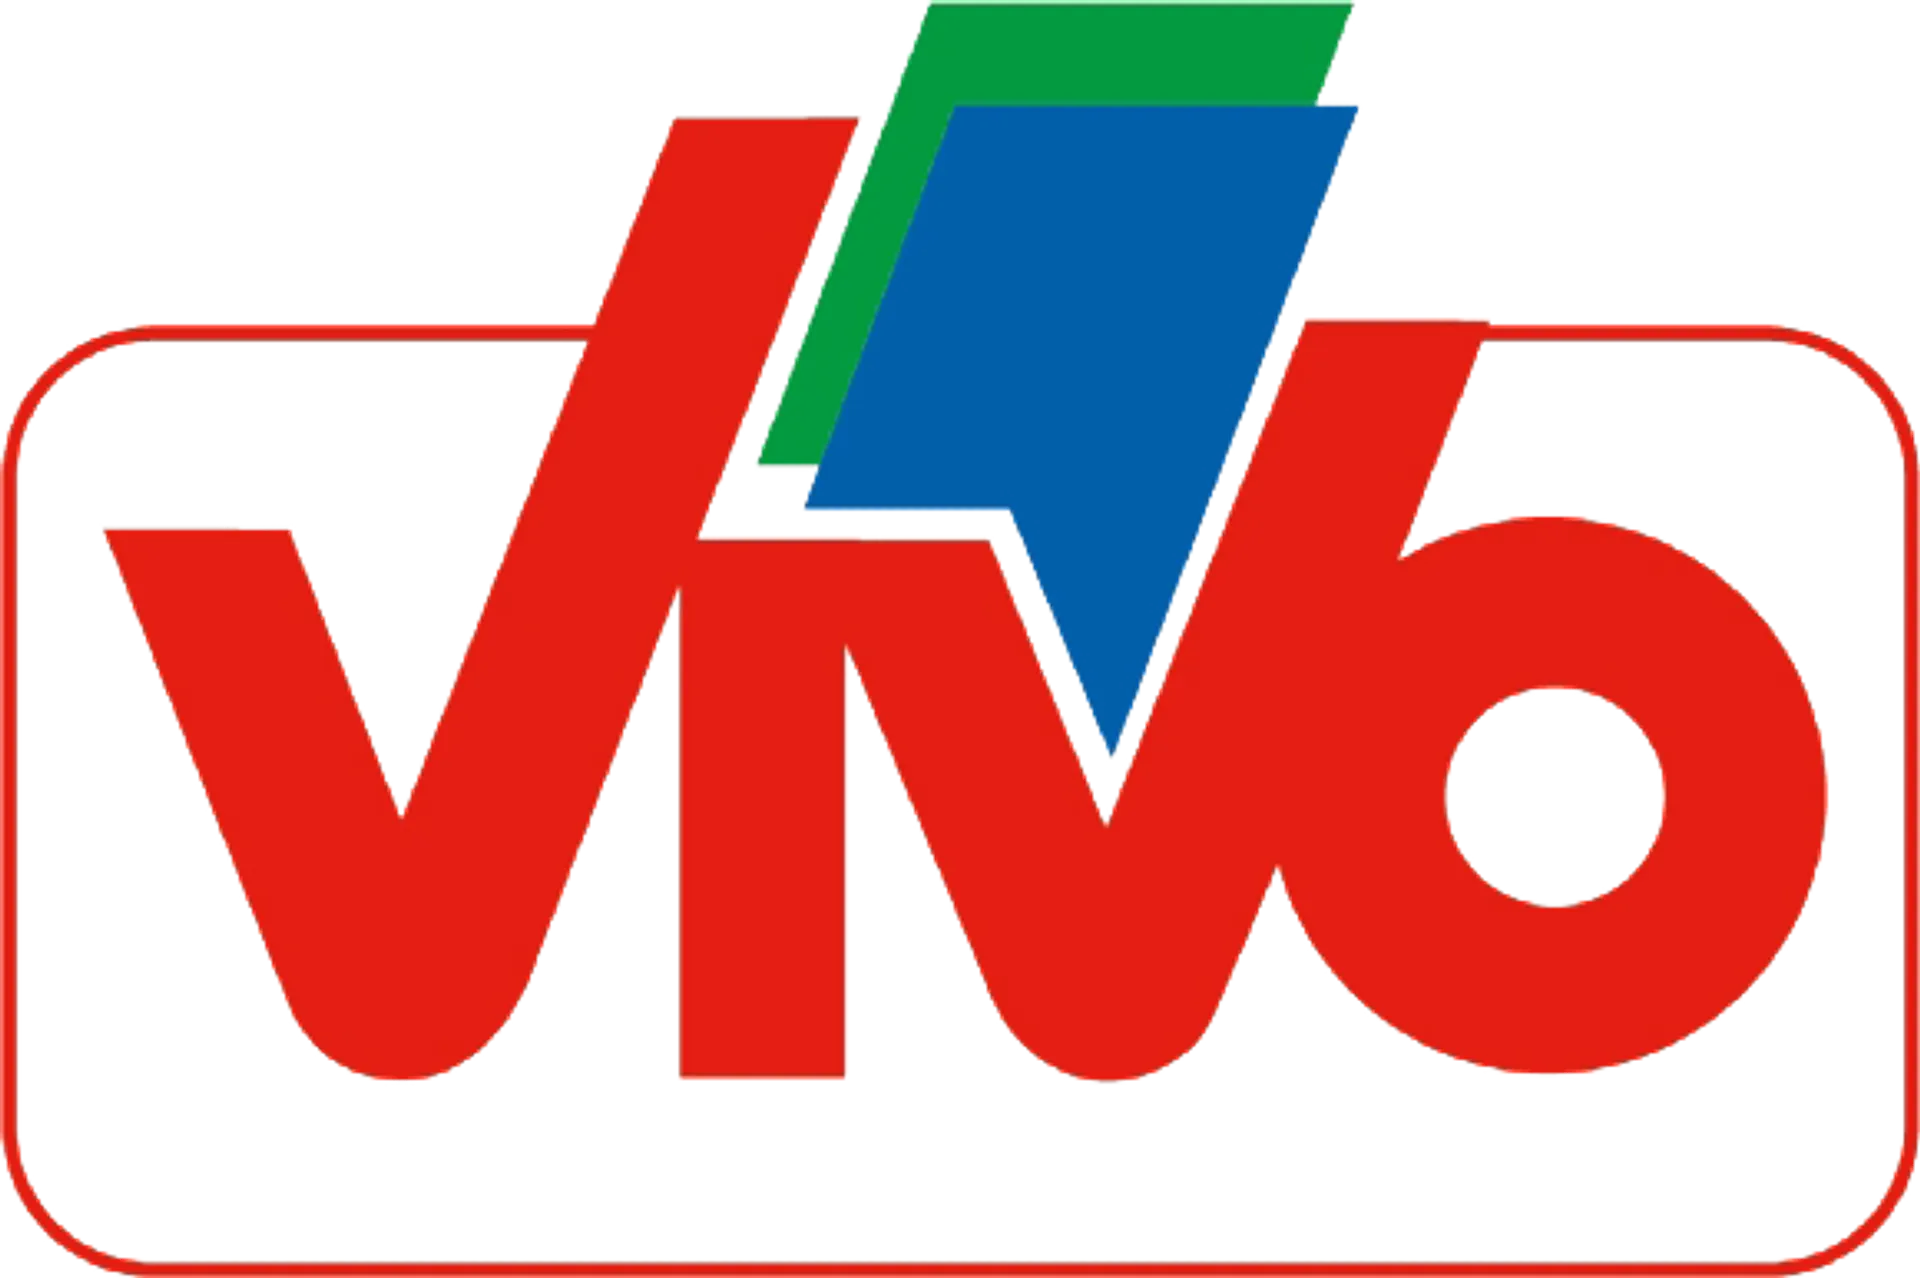 SUPERMERCATI VIVO logo del volantino attuale